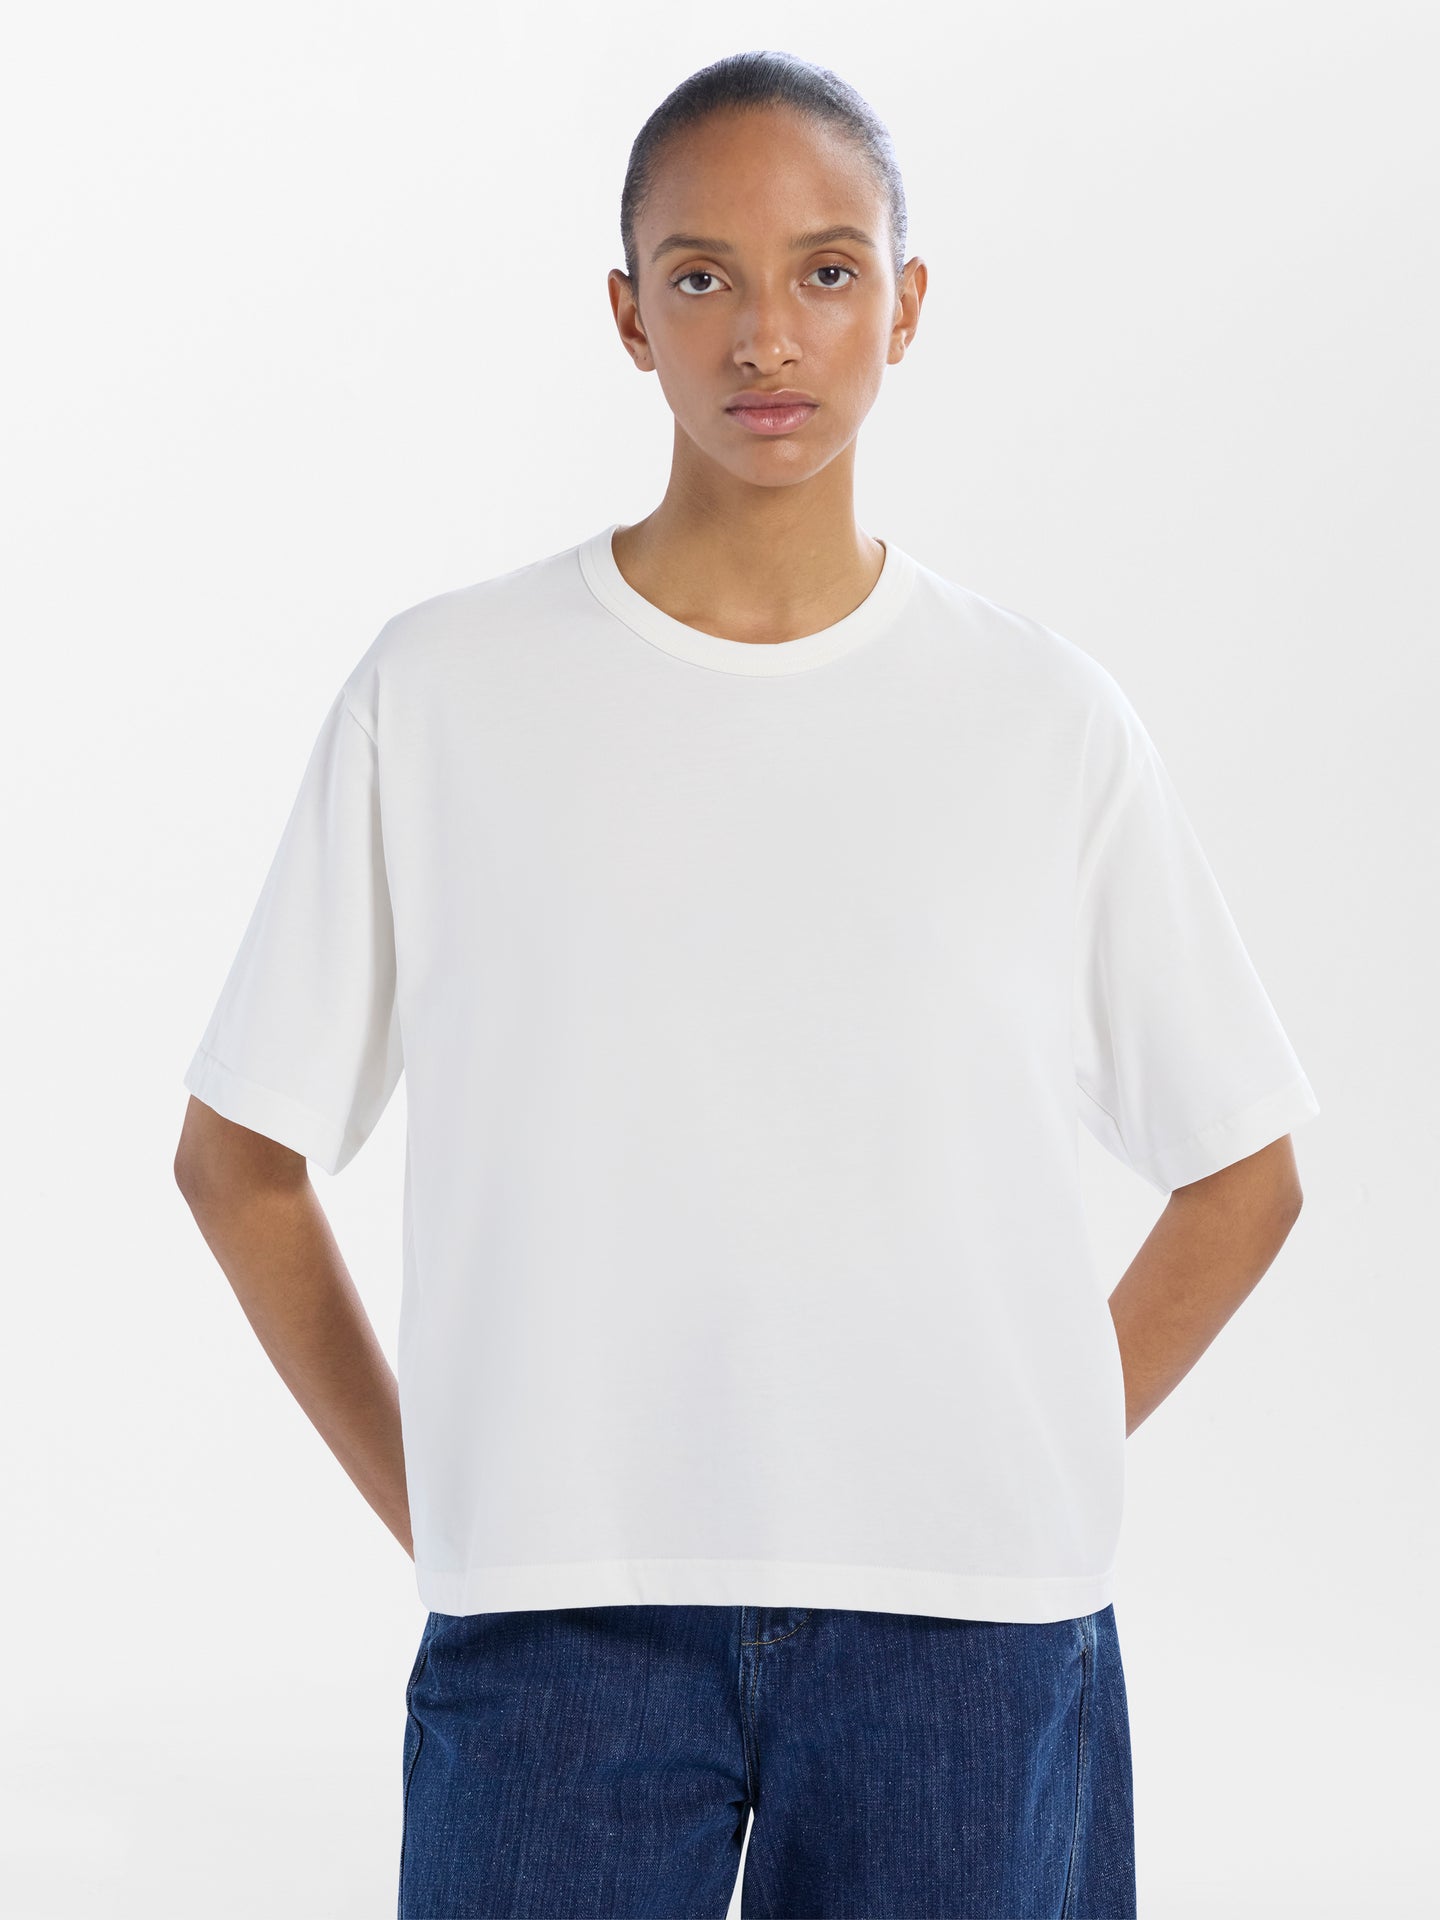 Nicholson Studio T-Shirt White– Optic Marine in